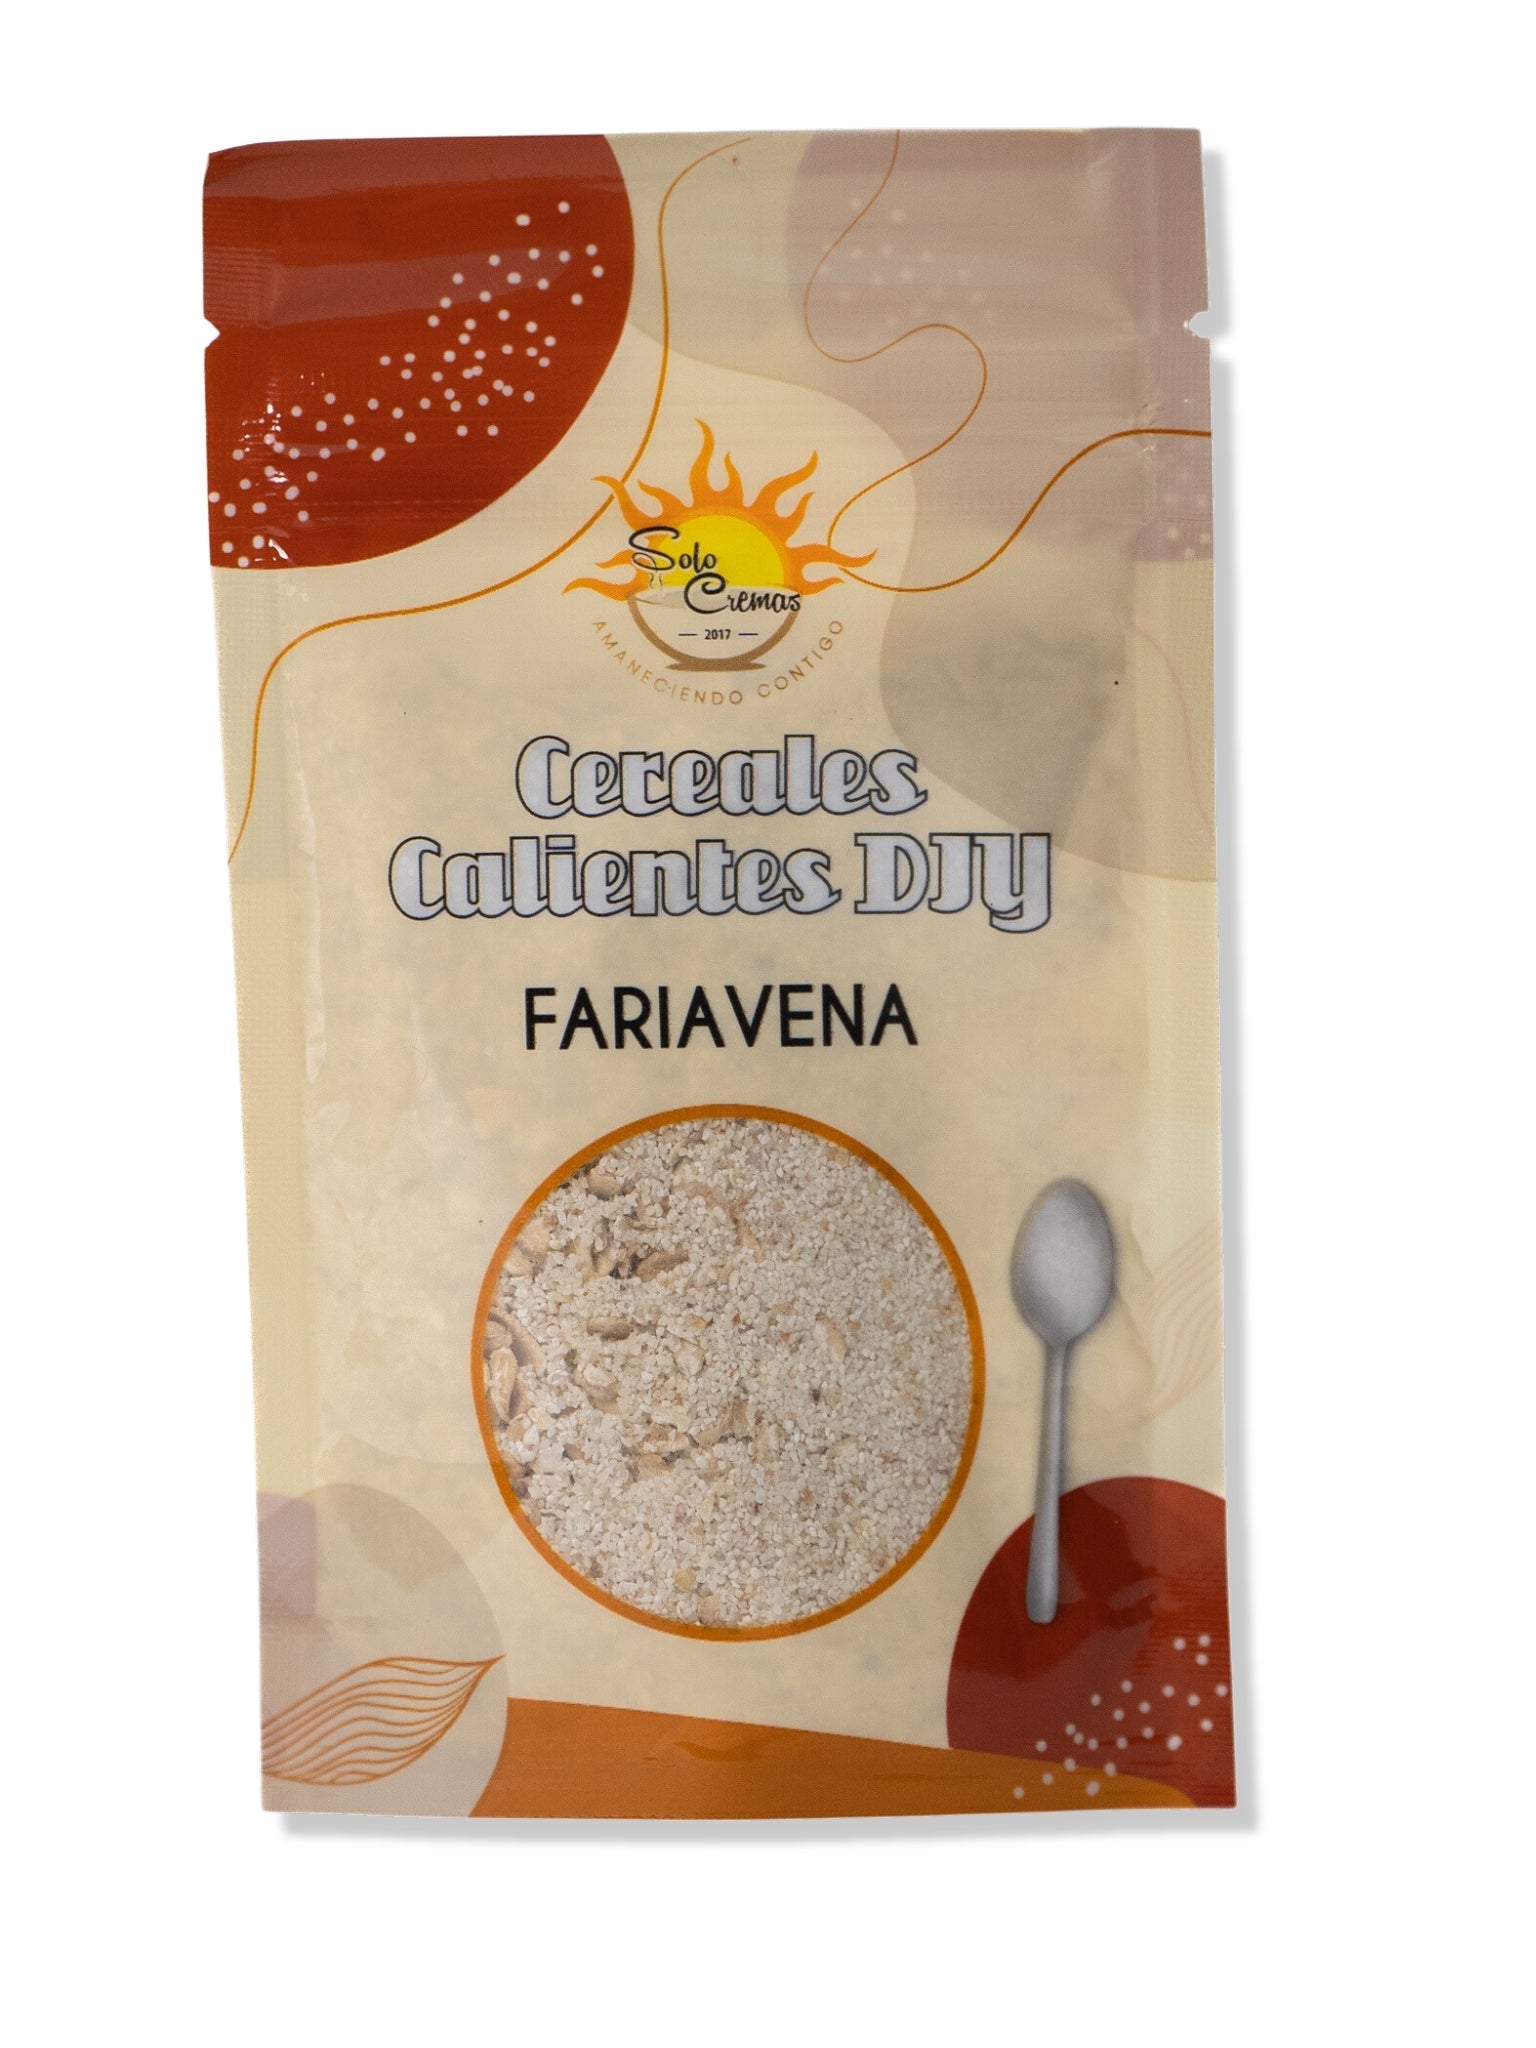 Fariavena - Customizala - Solo Cremas